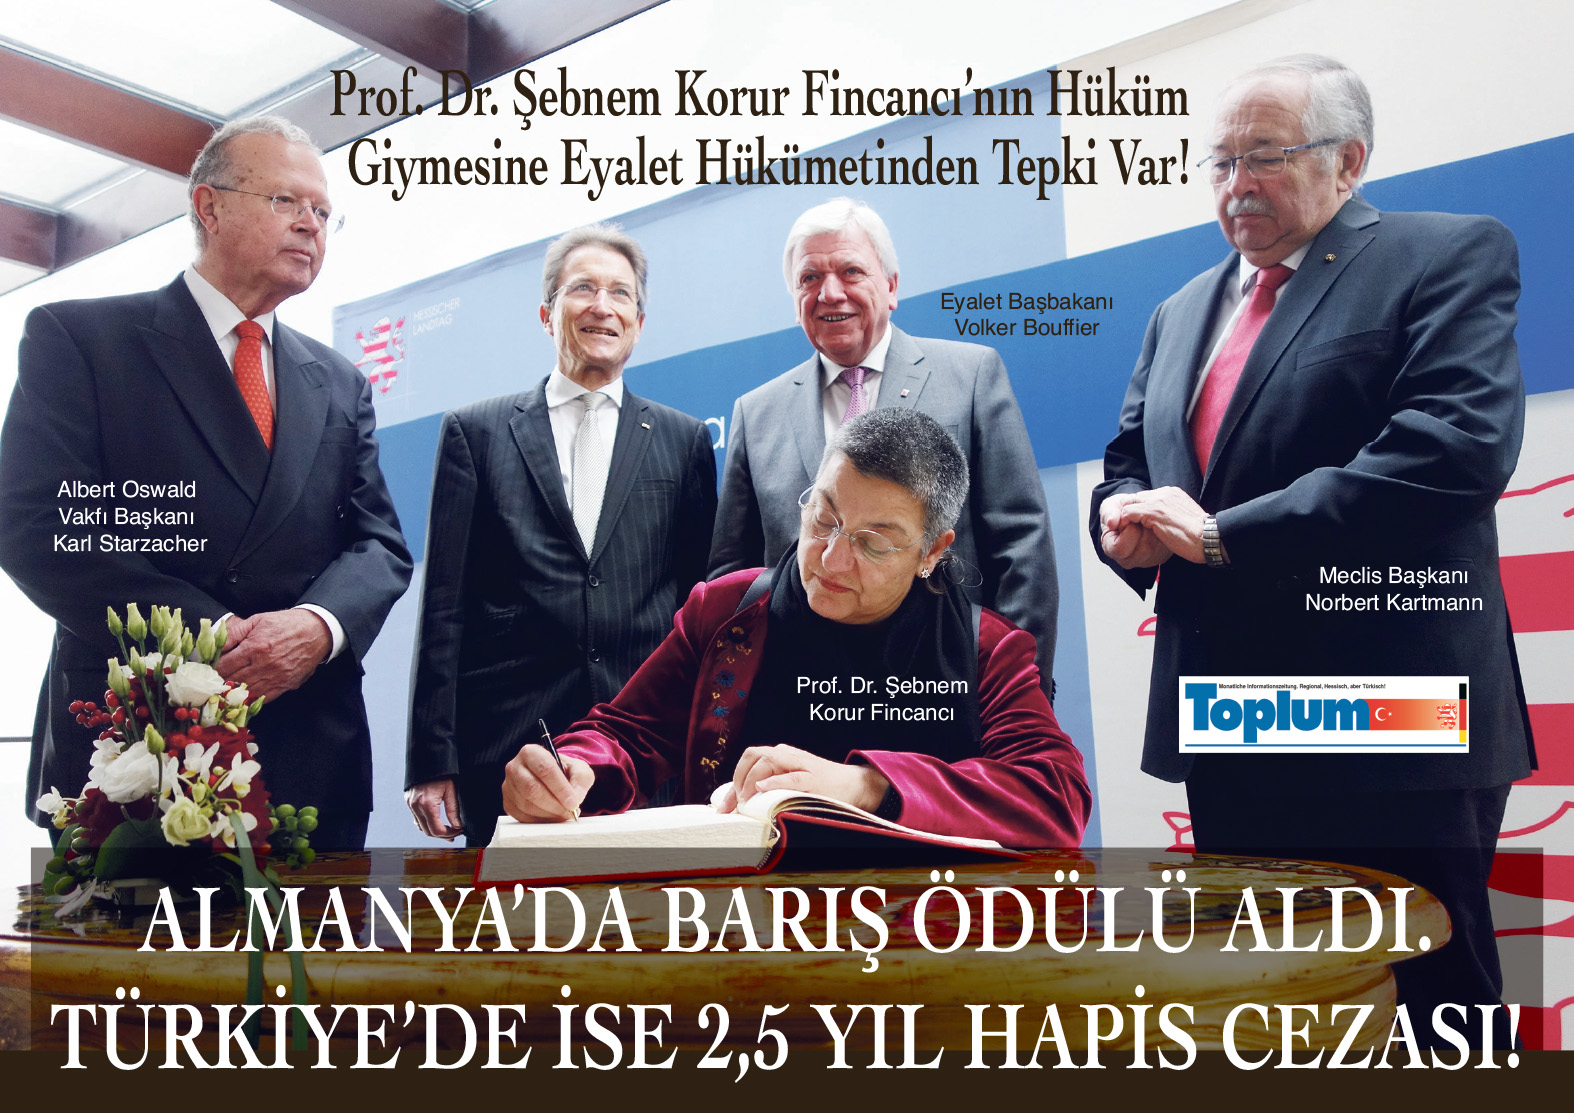 Hessen Barış Ödülü Sahibi Prof. Fincancı'ya Türkiye'de 2,5 Yıl Hapis Cezası - Toplum24